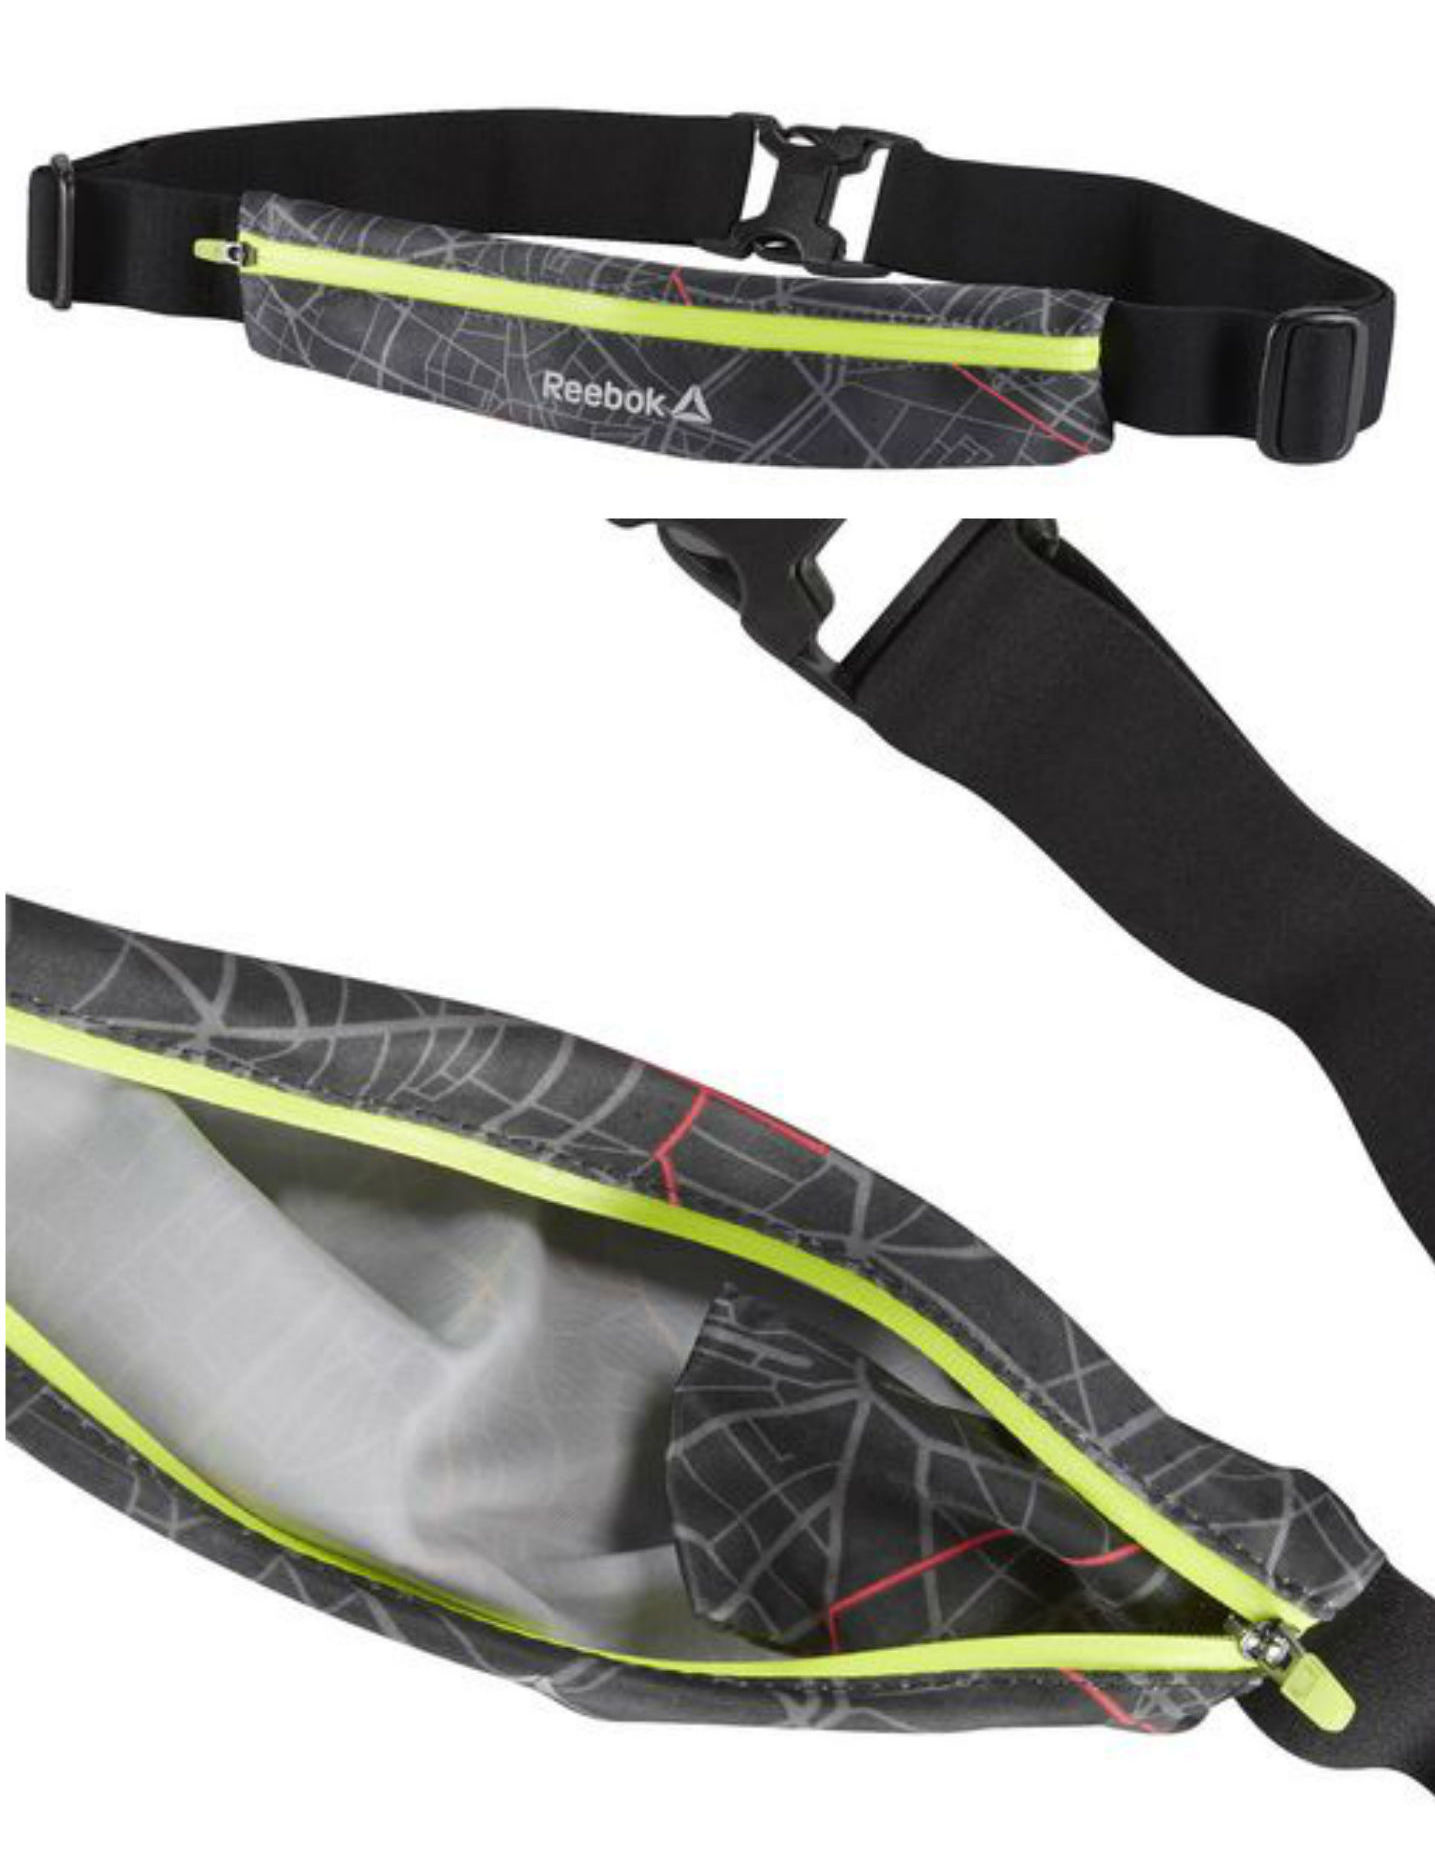 Обзор не гаджета. Выбираем лучший чехол для тренировок и другие аксессуары для смартфонов: повязки, сумки и силиконовый карман Adidas - 6